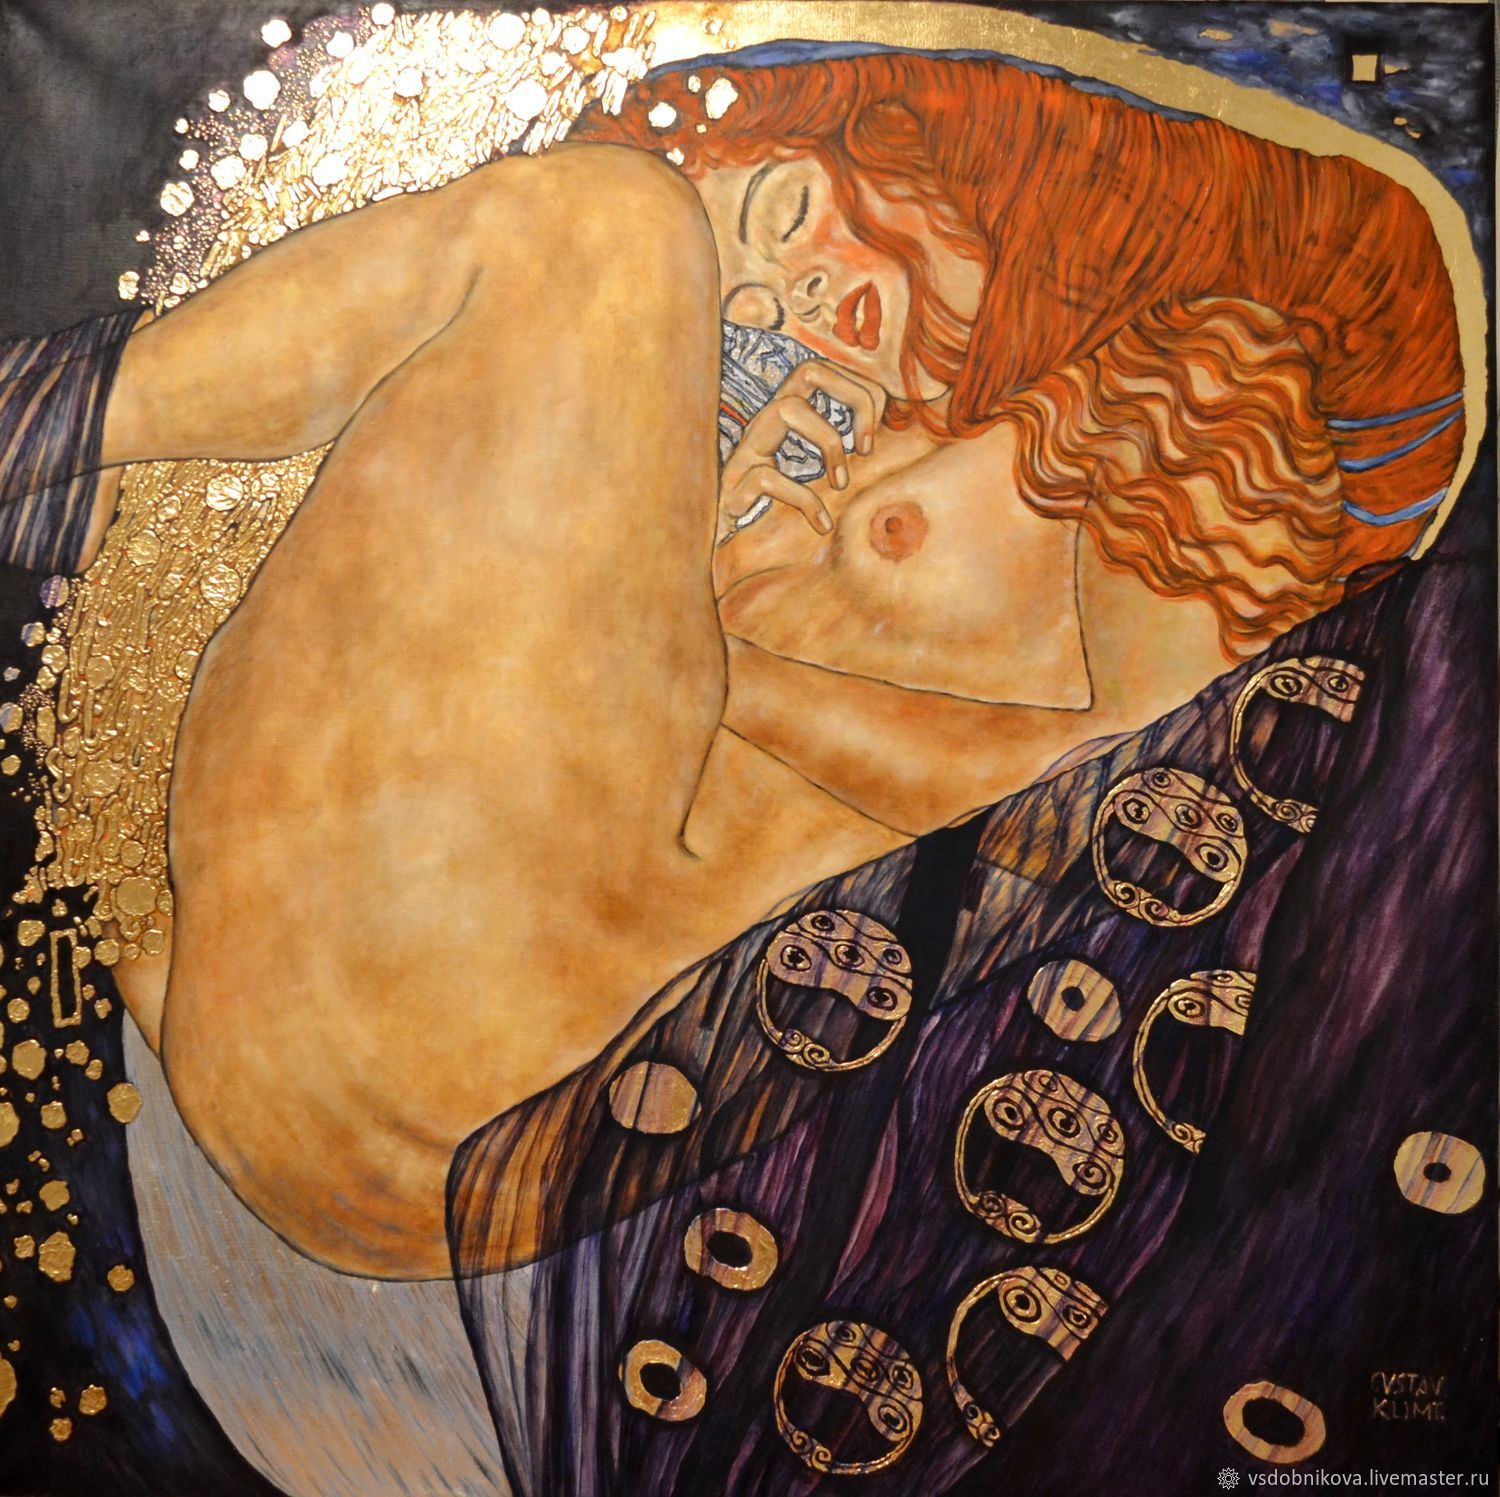 Купить репродукцию картины Даная 3, Климт Густав (Gustav Klimt)